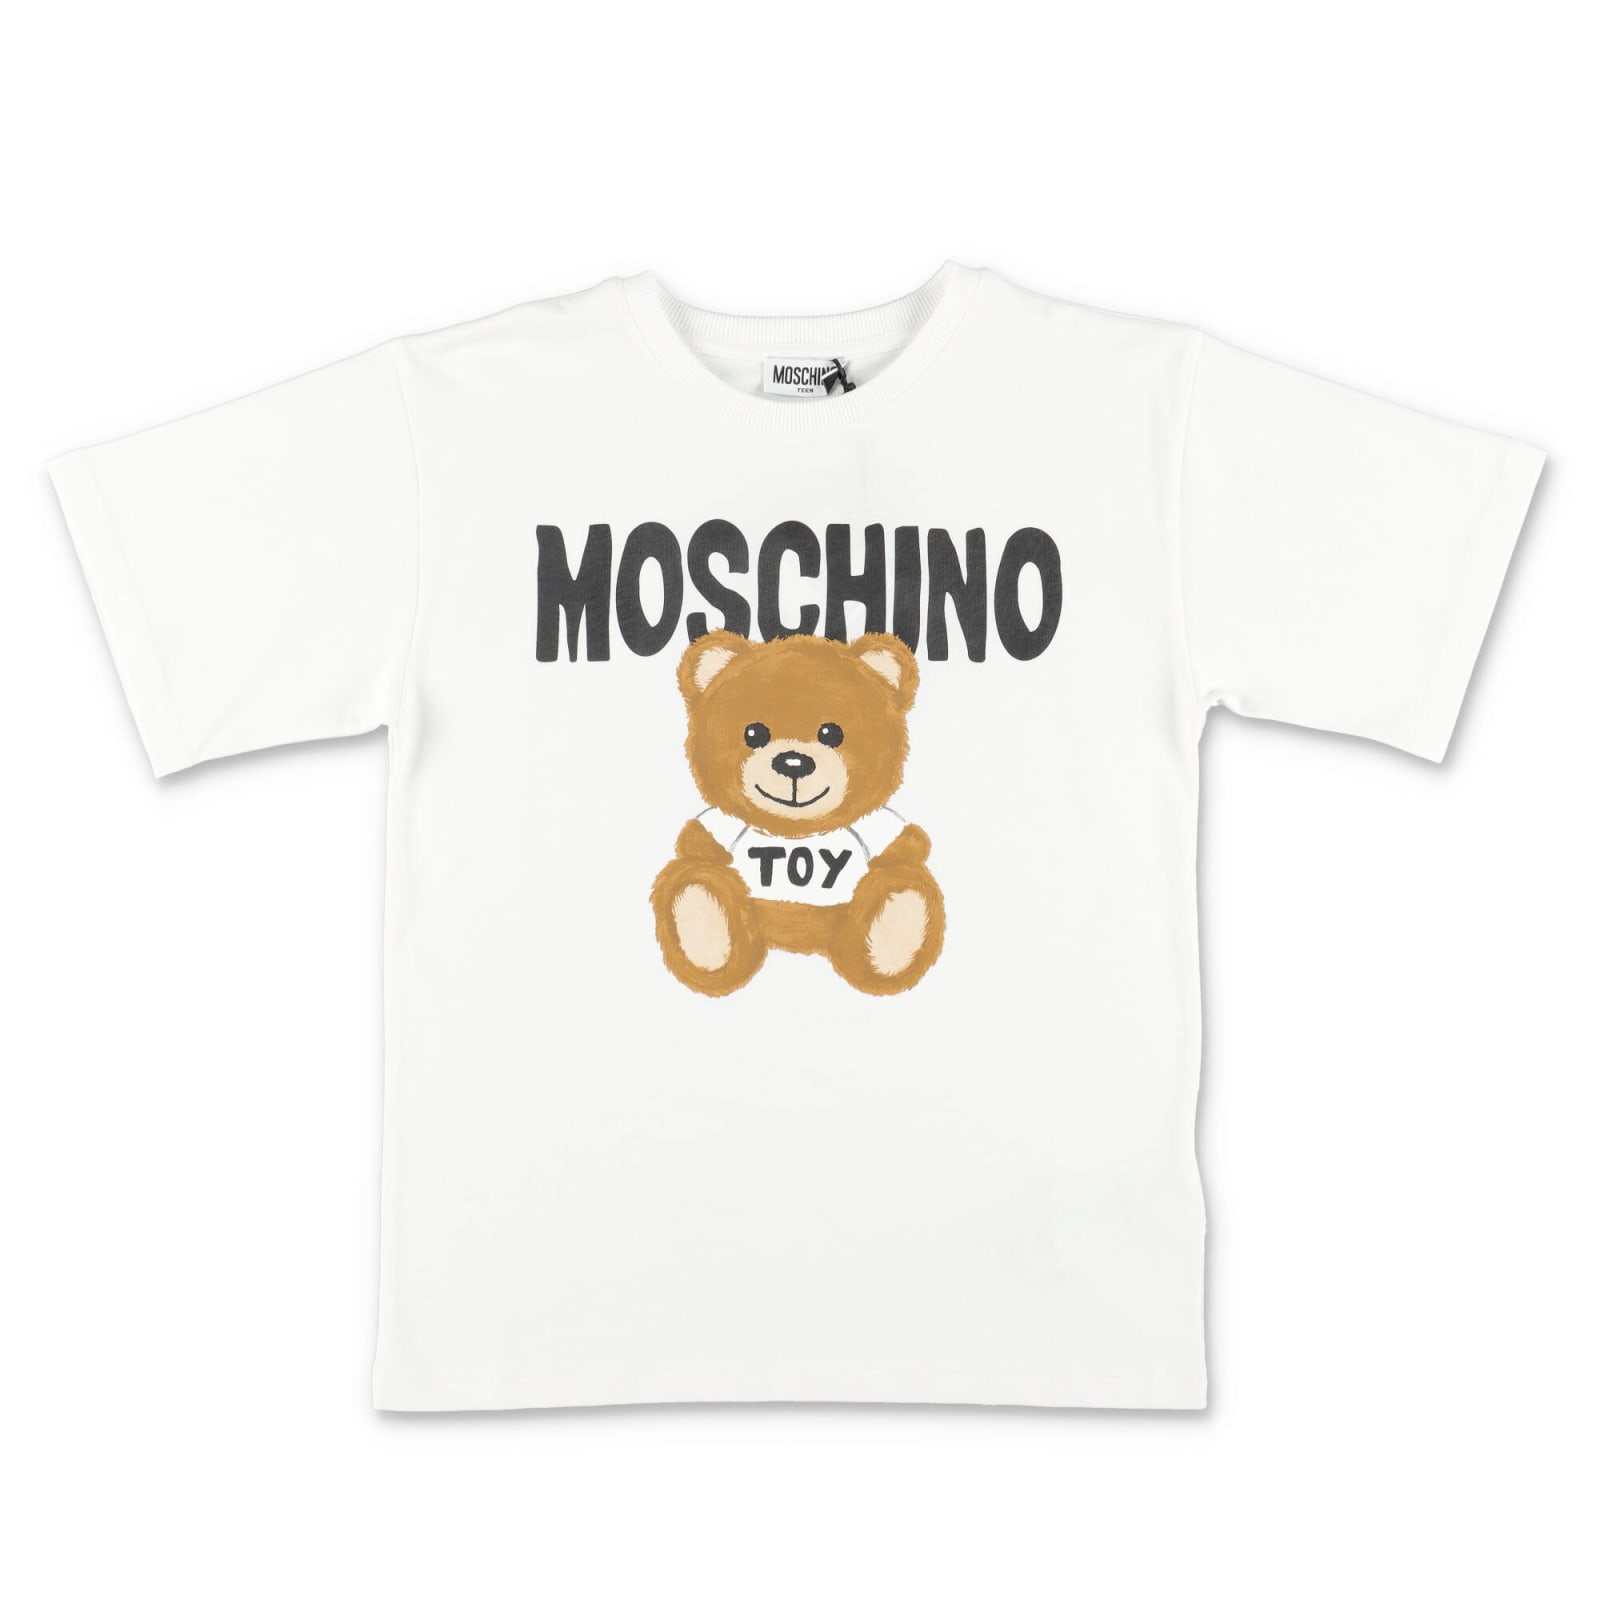 Moschino T-shirt Teddy Bear Bianca In Jersey Di Cotone Bambino